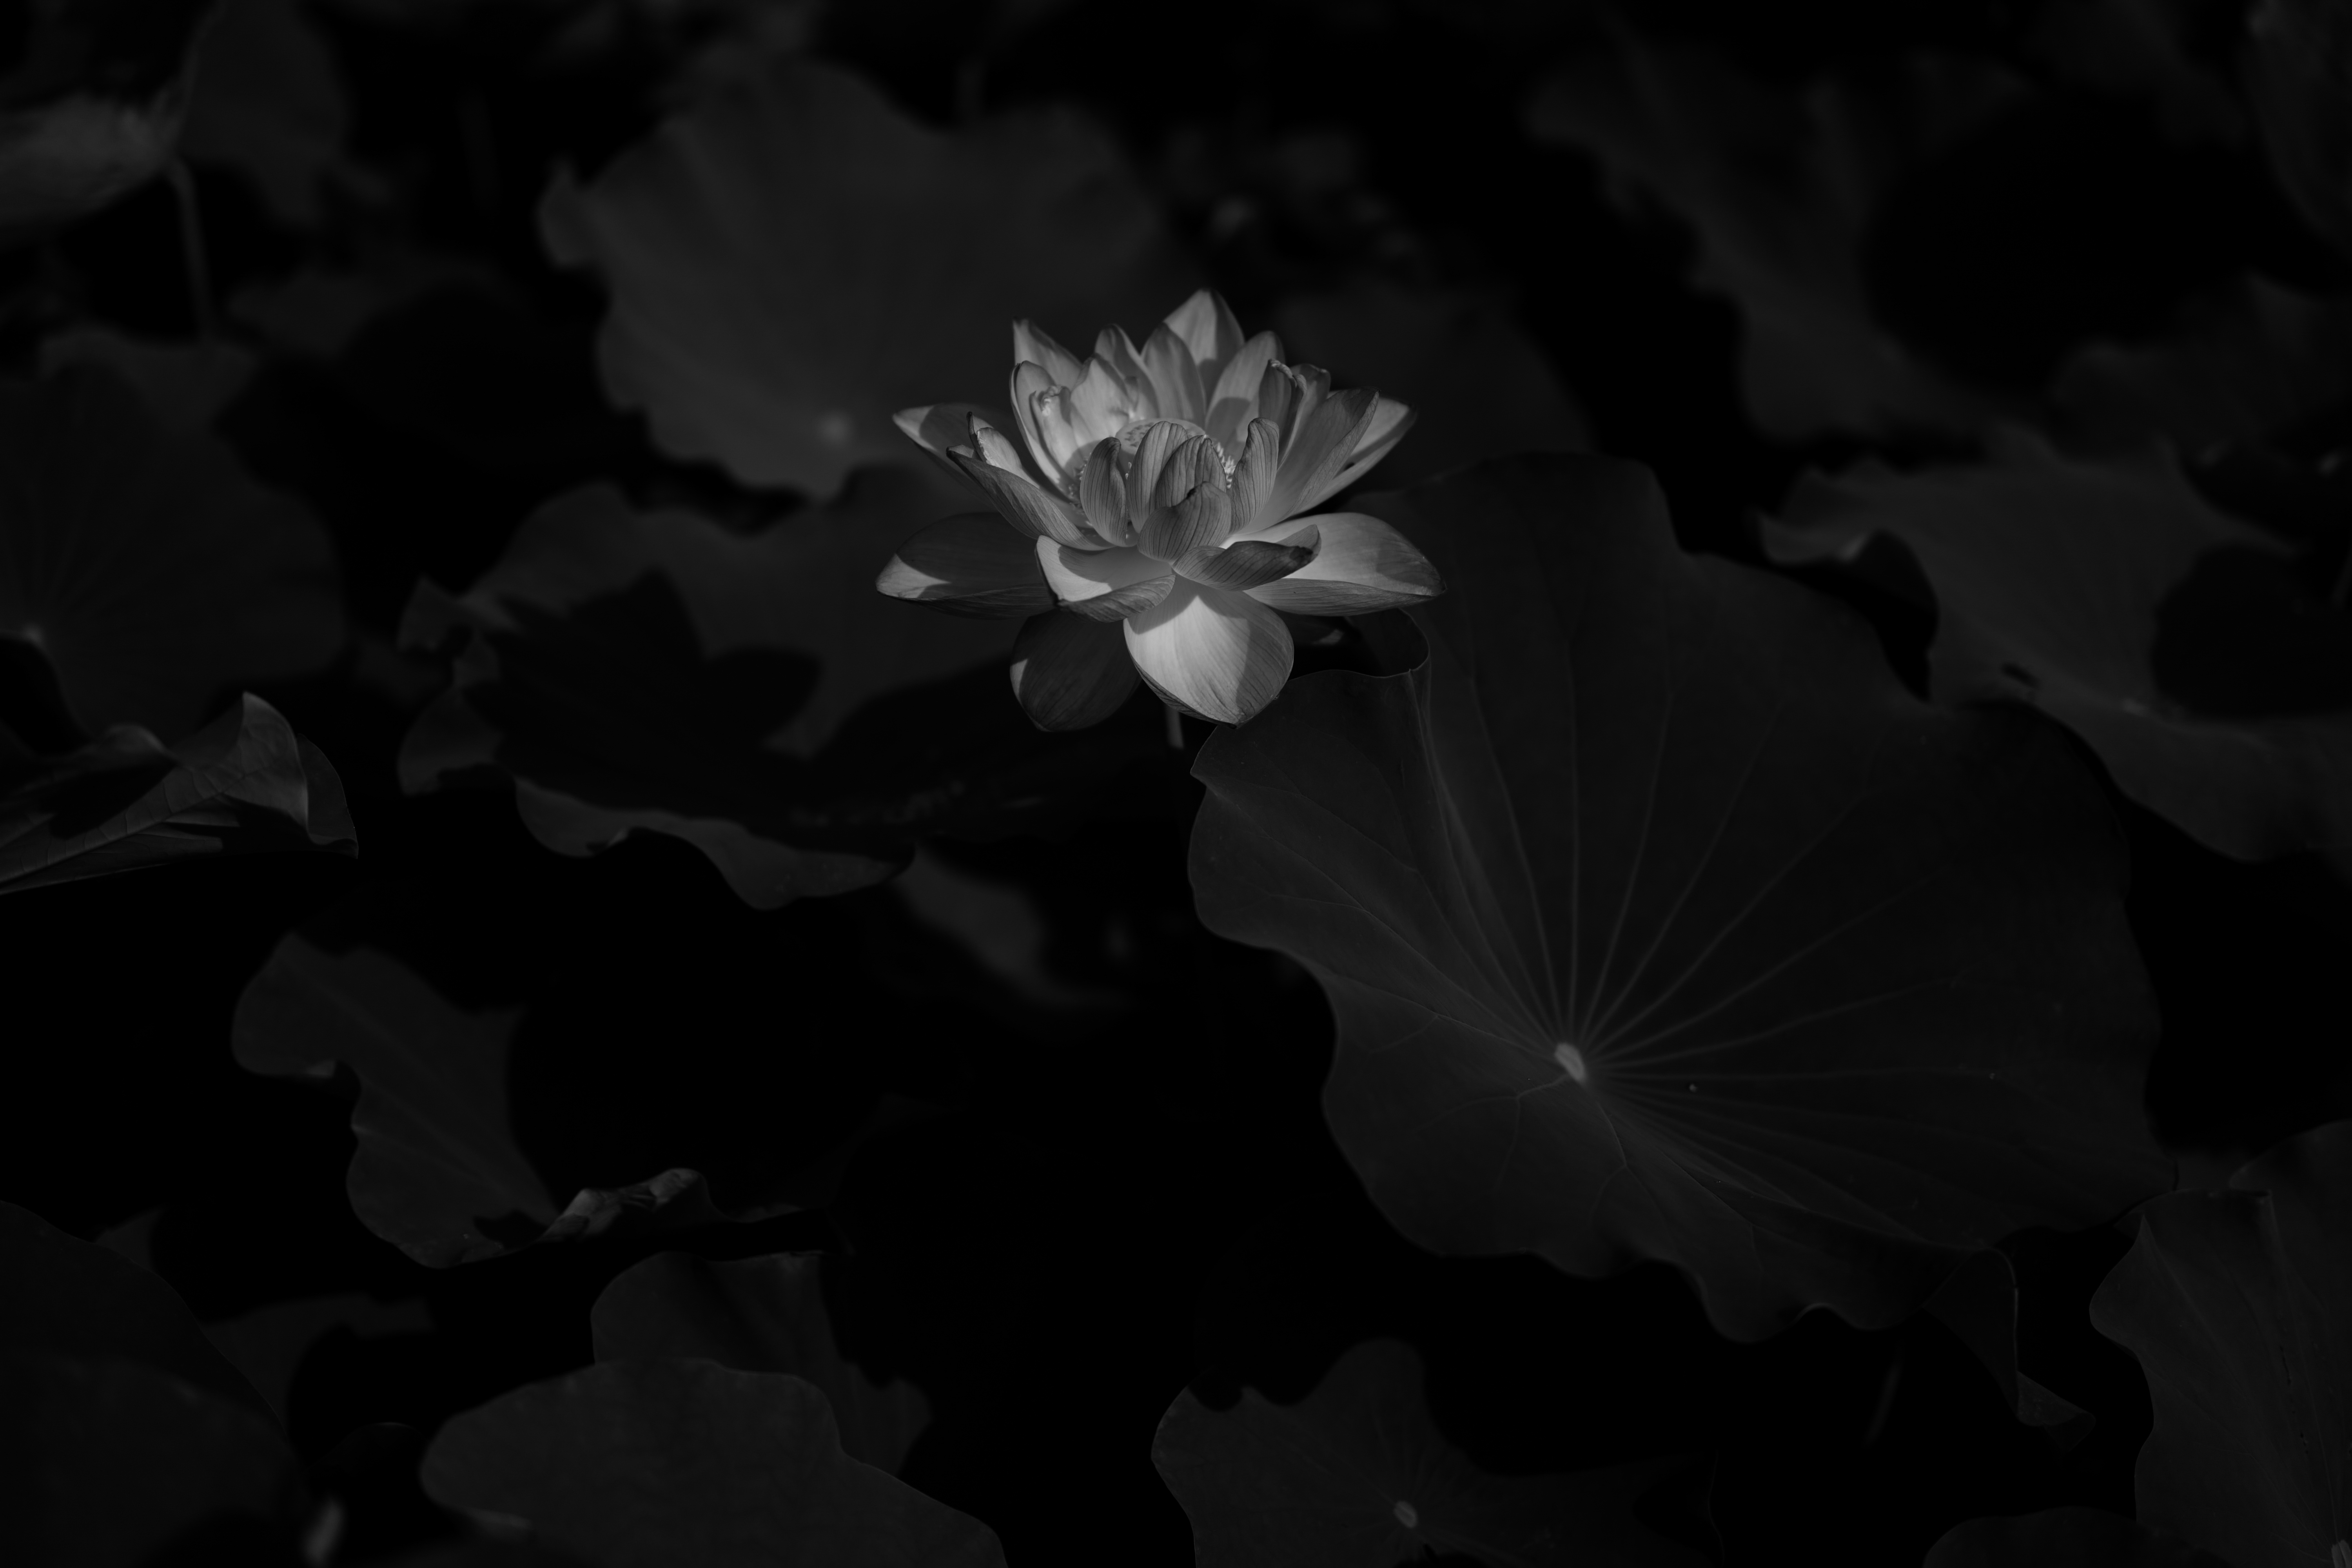 Free Images flowers, chb, flowering, bw Lotus